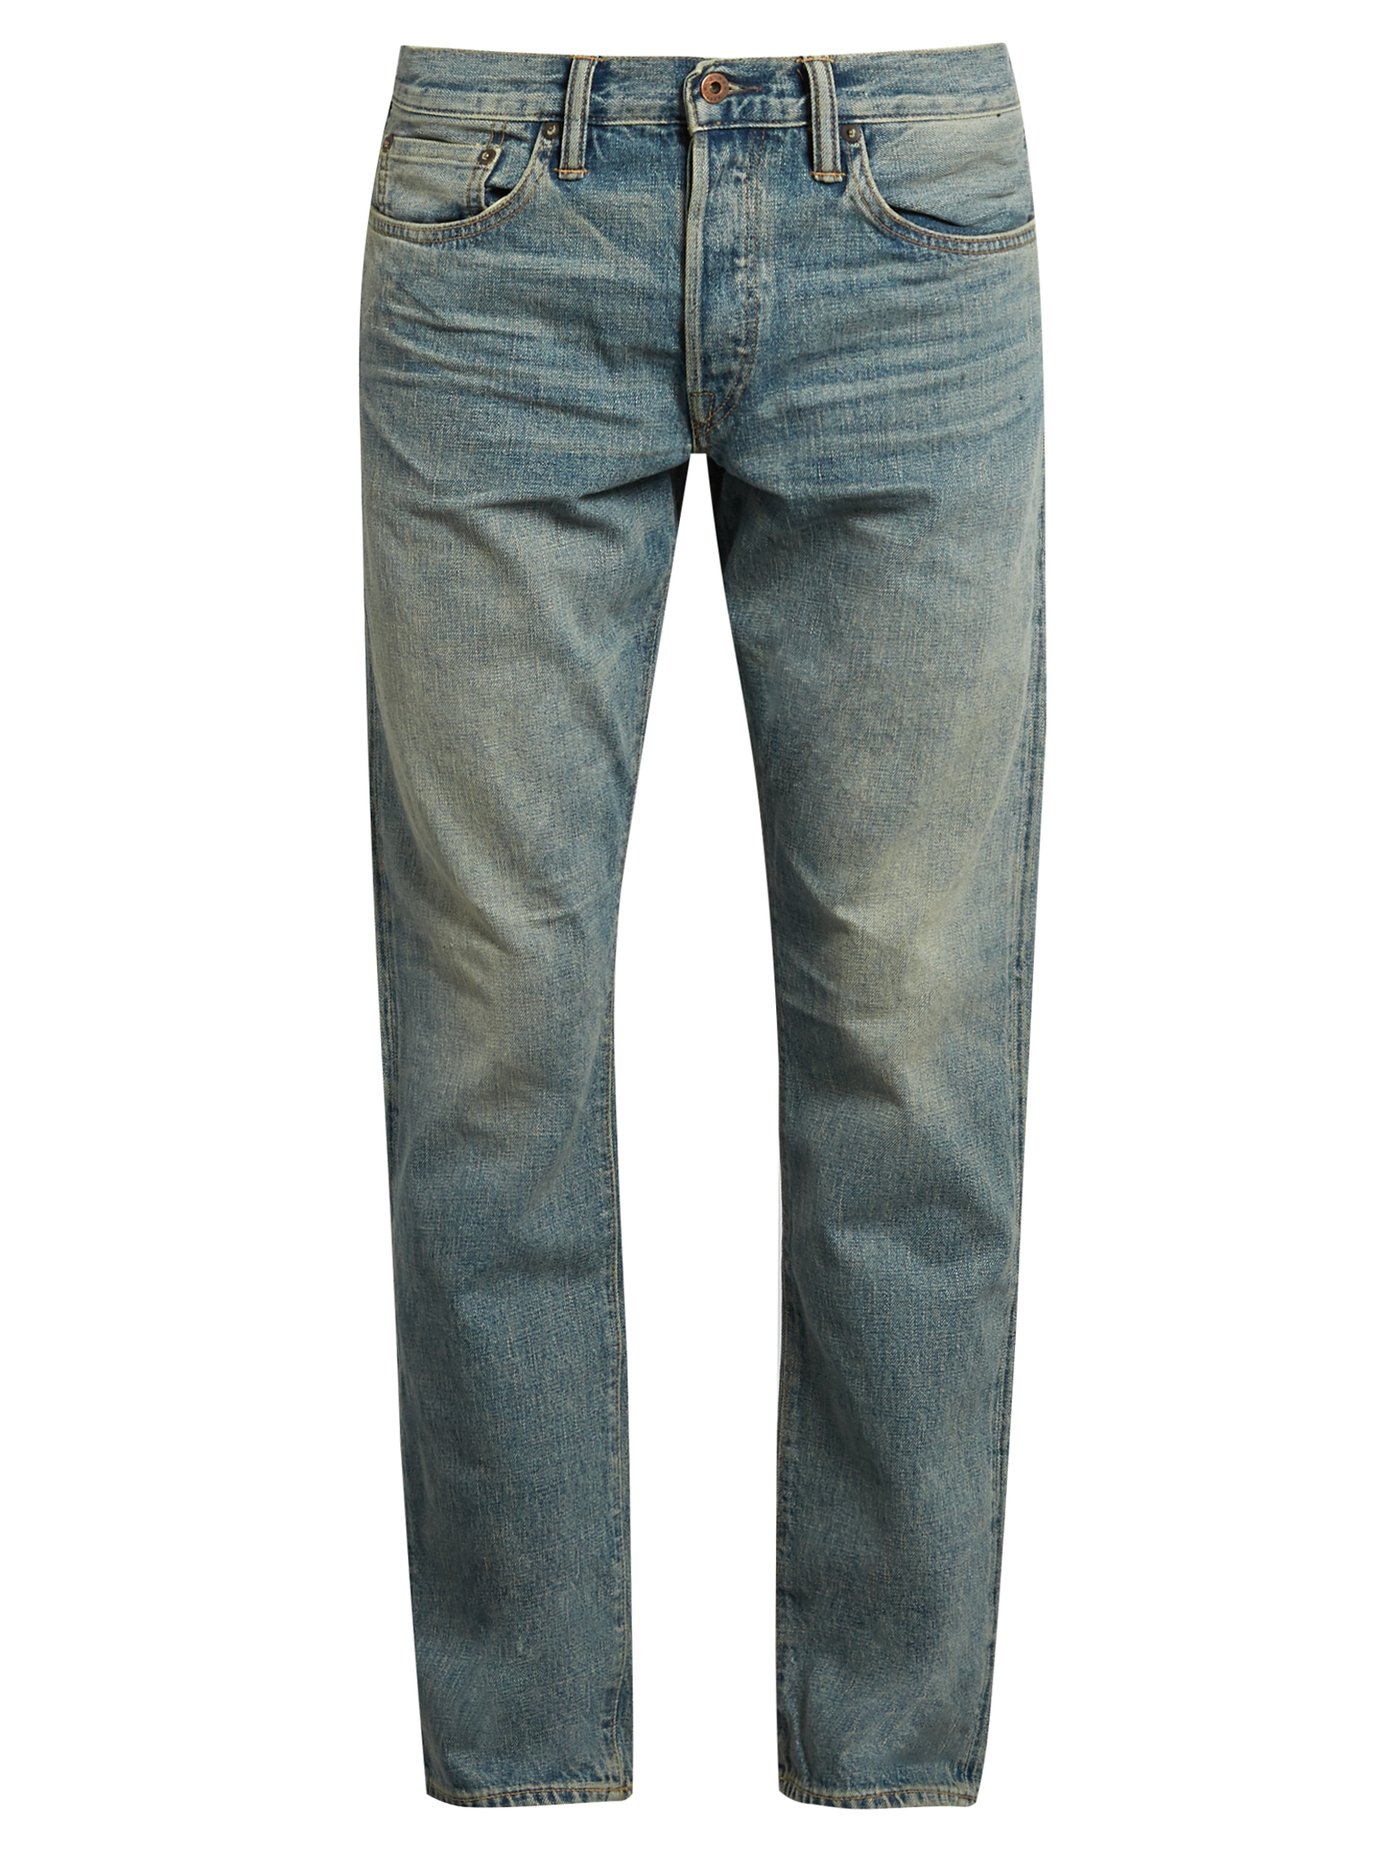 jeans wrangler arizona stretch